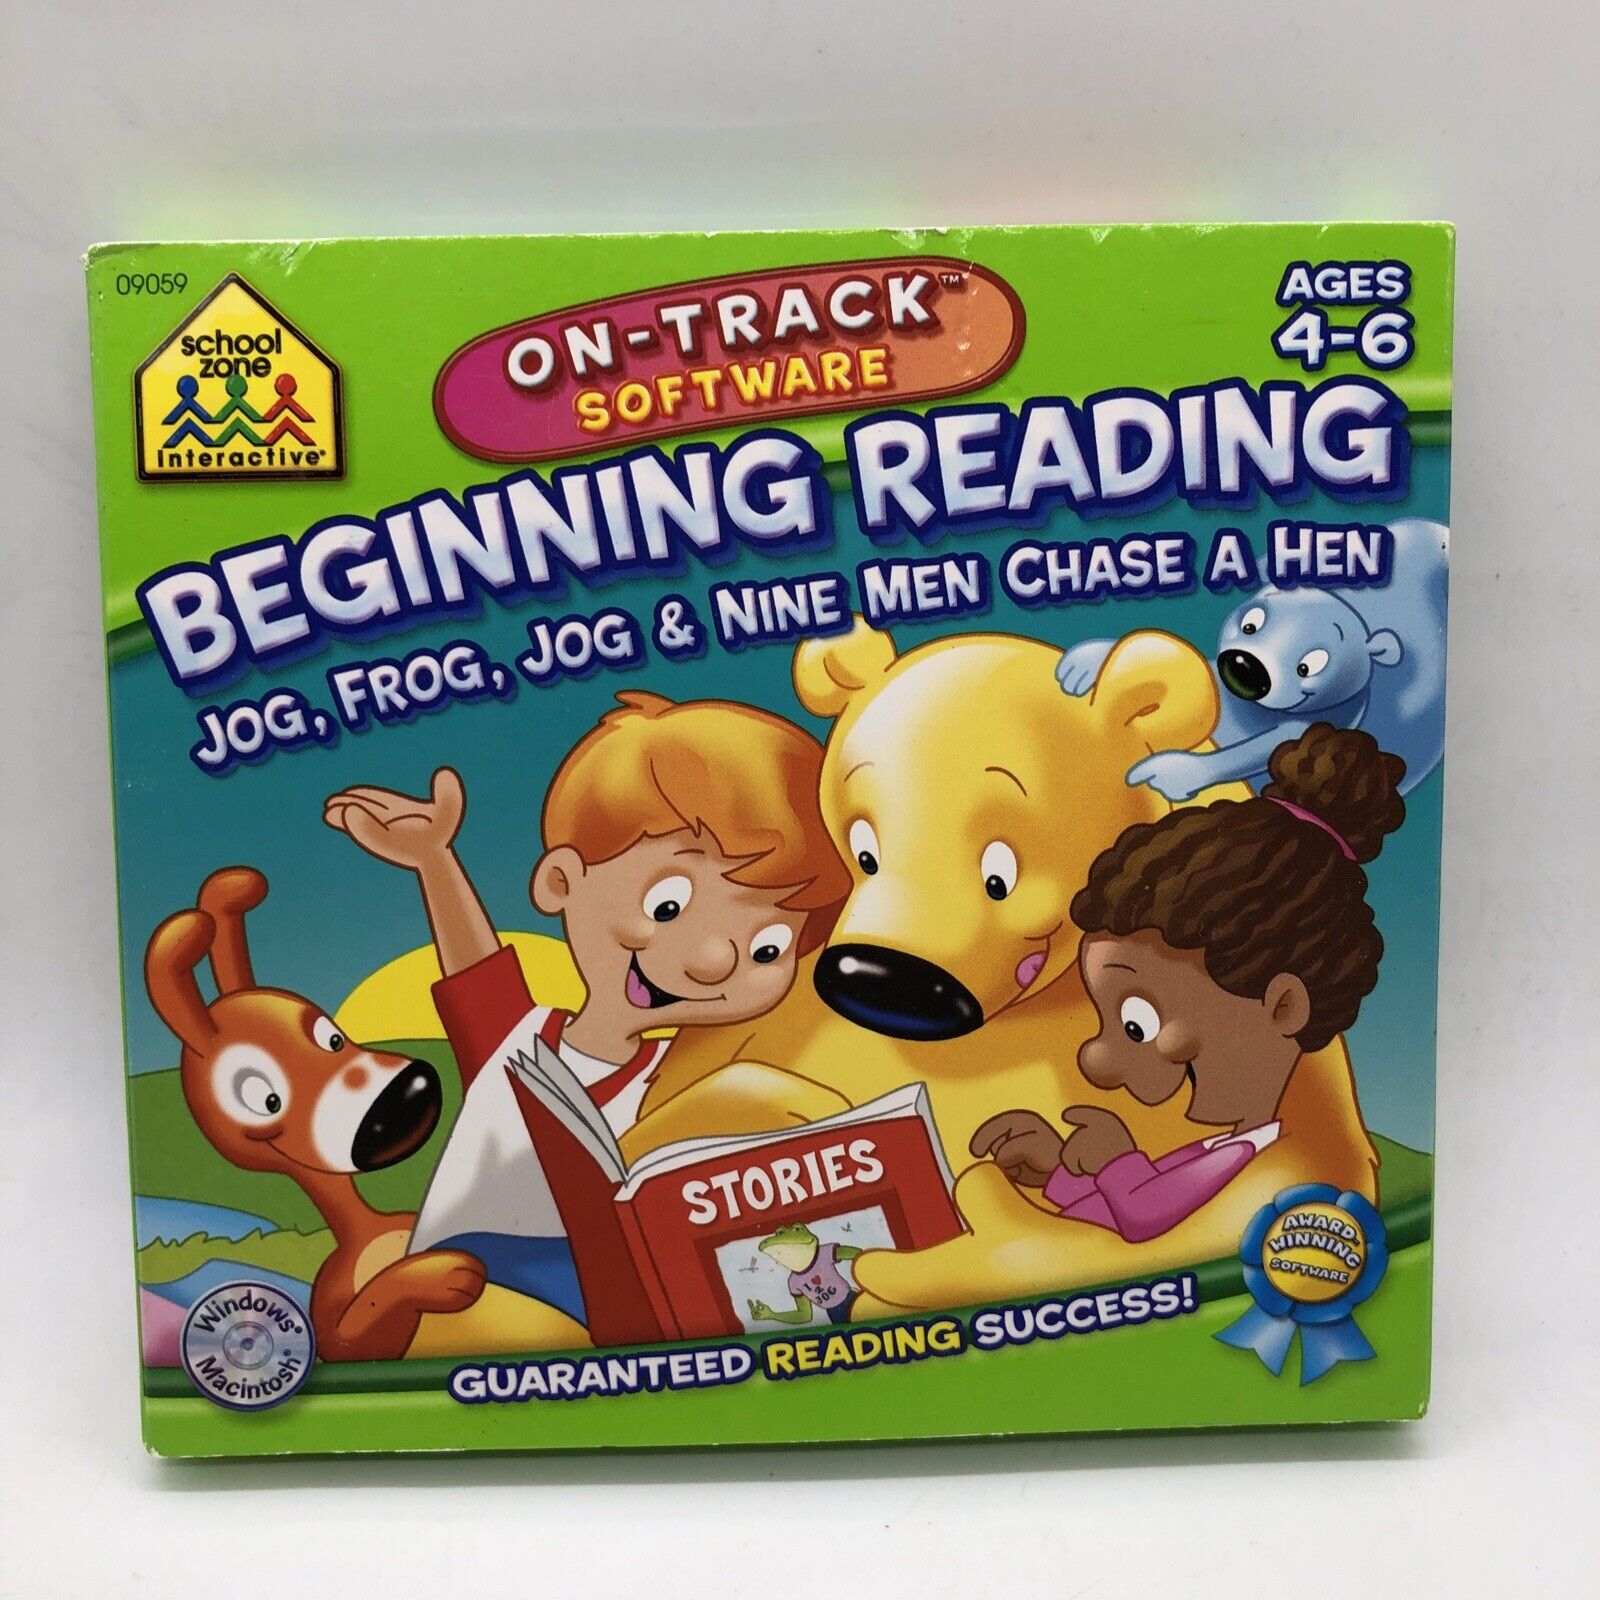 School Zone Interactive Software Pre School Beginning Reading Joy, Frog, Jog